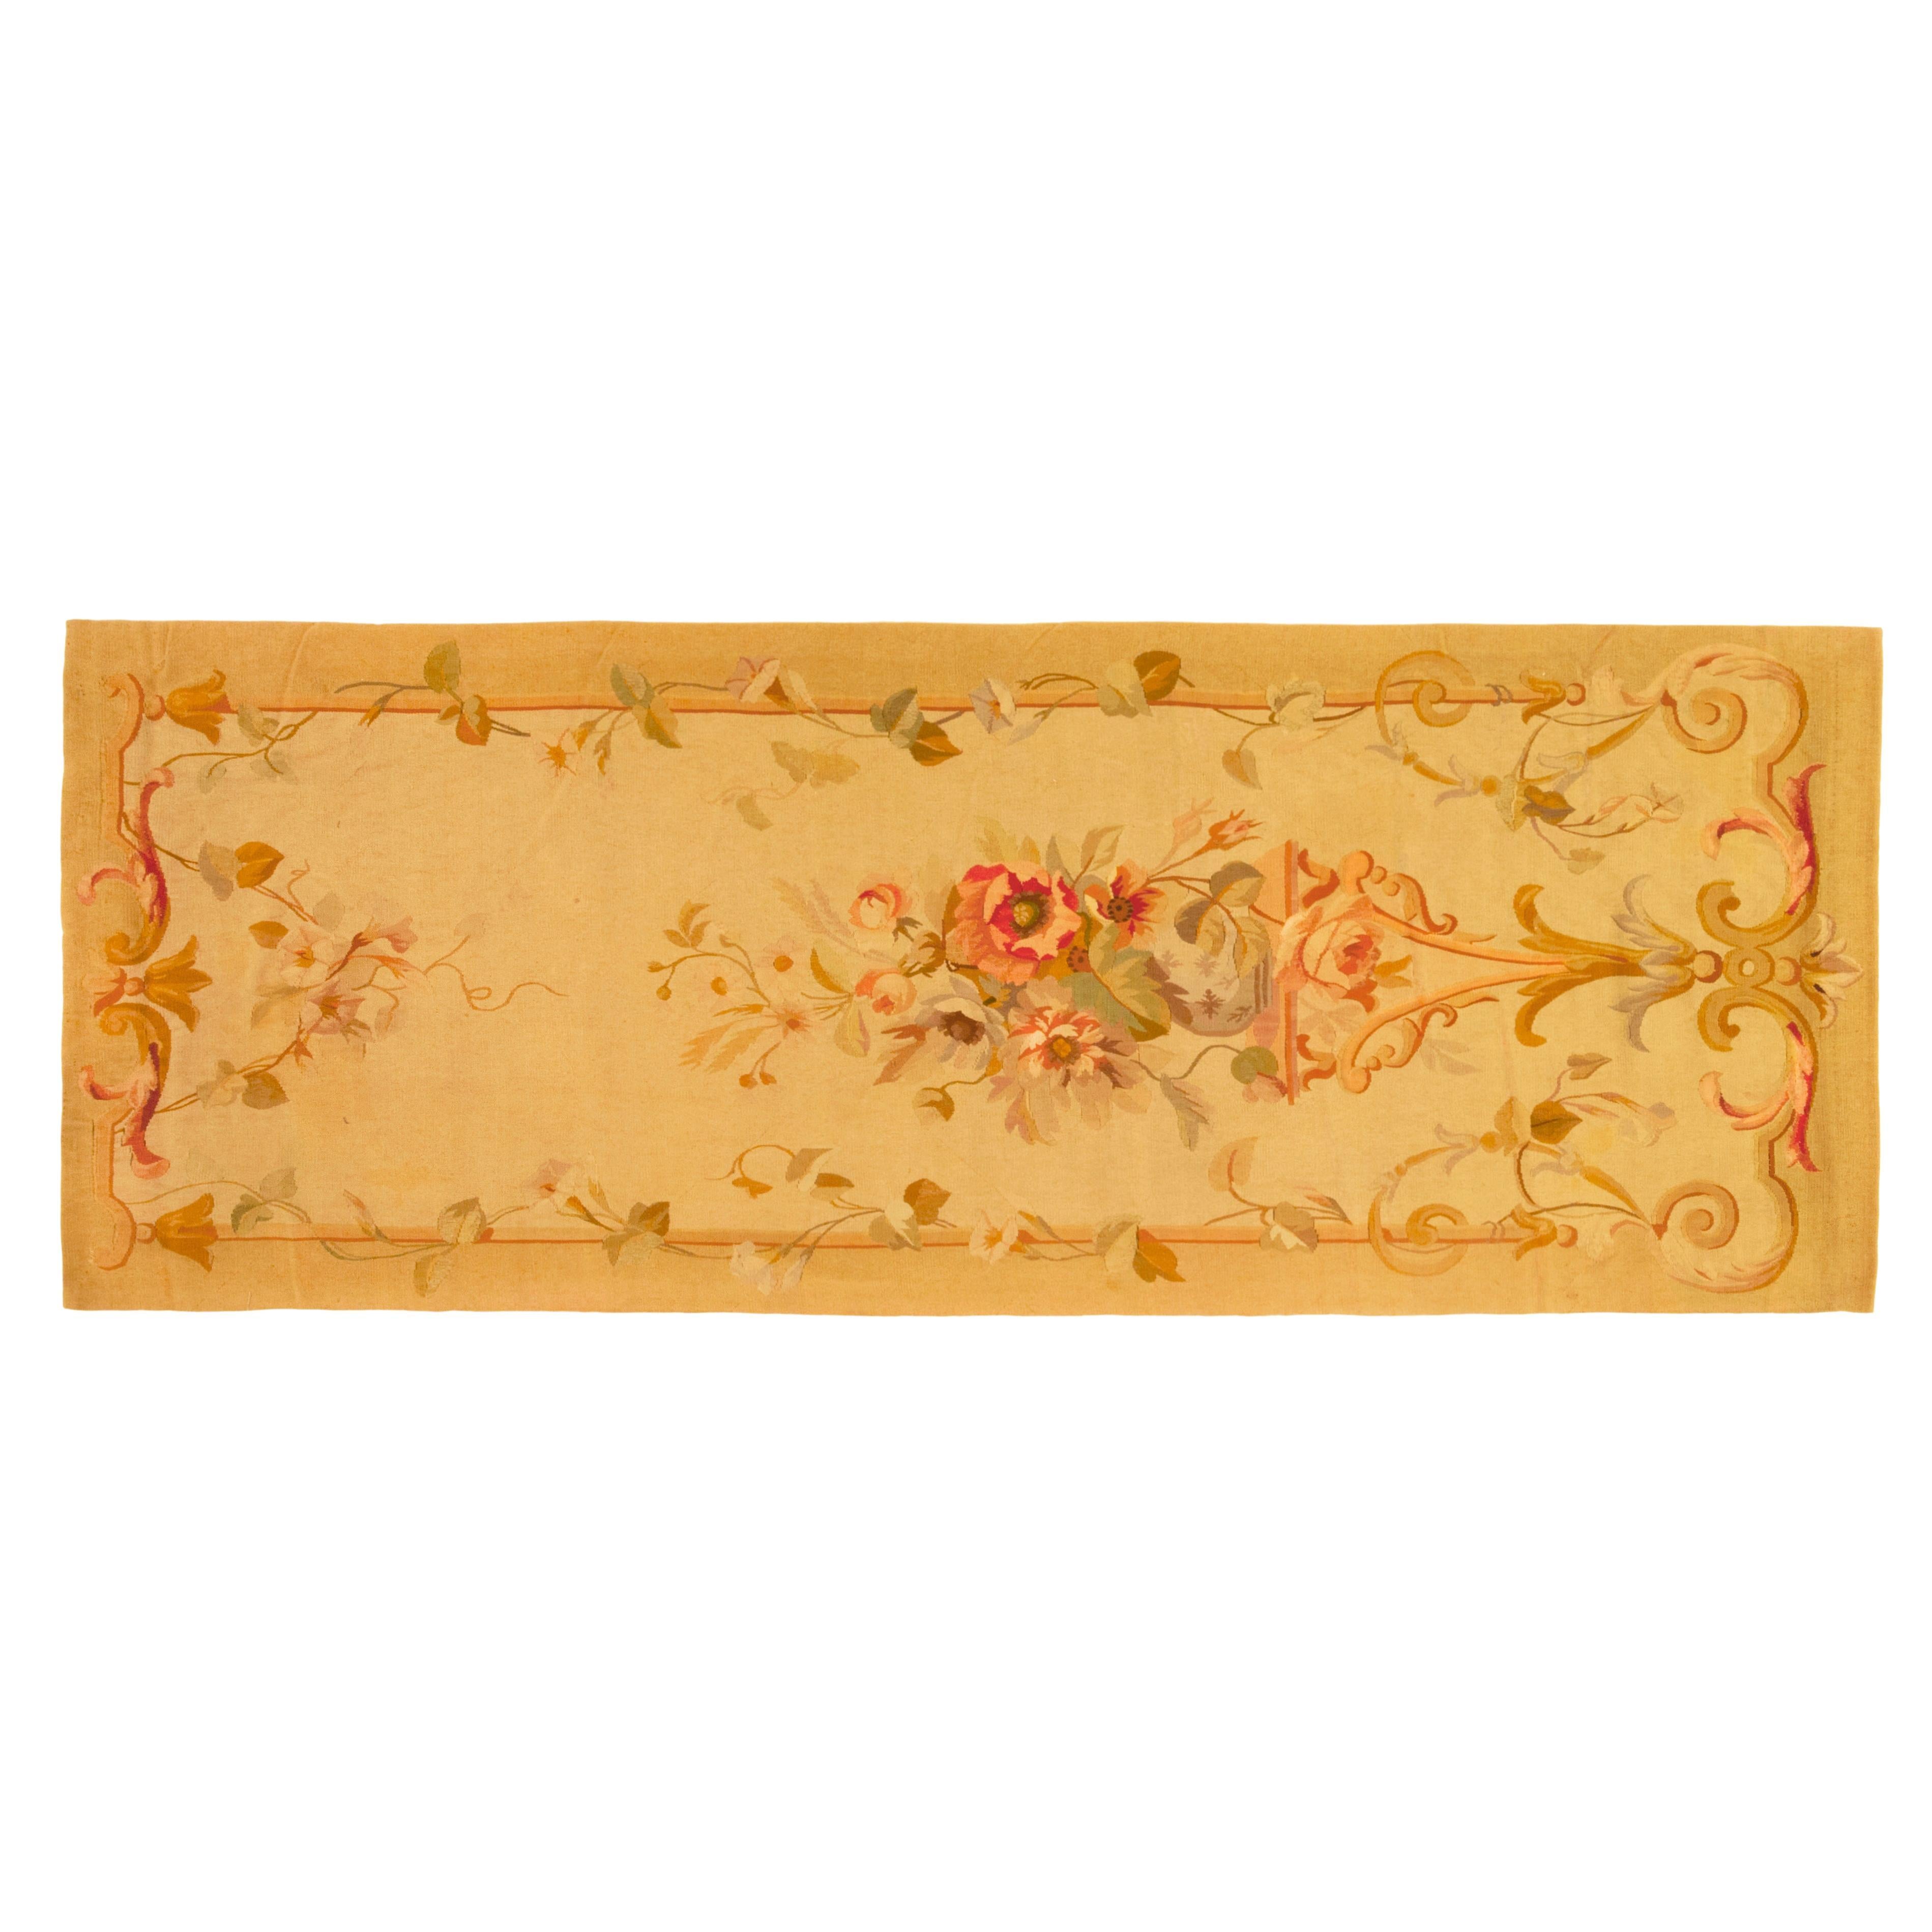 Tapis d'Aubusson français ancien, taille tapis de couloir avec médaillon central et fleurs